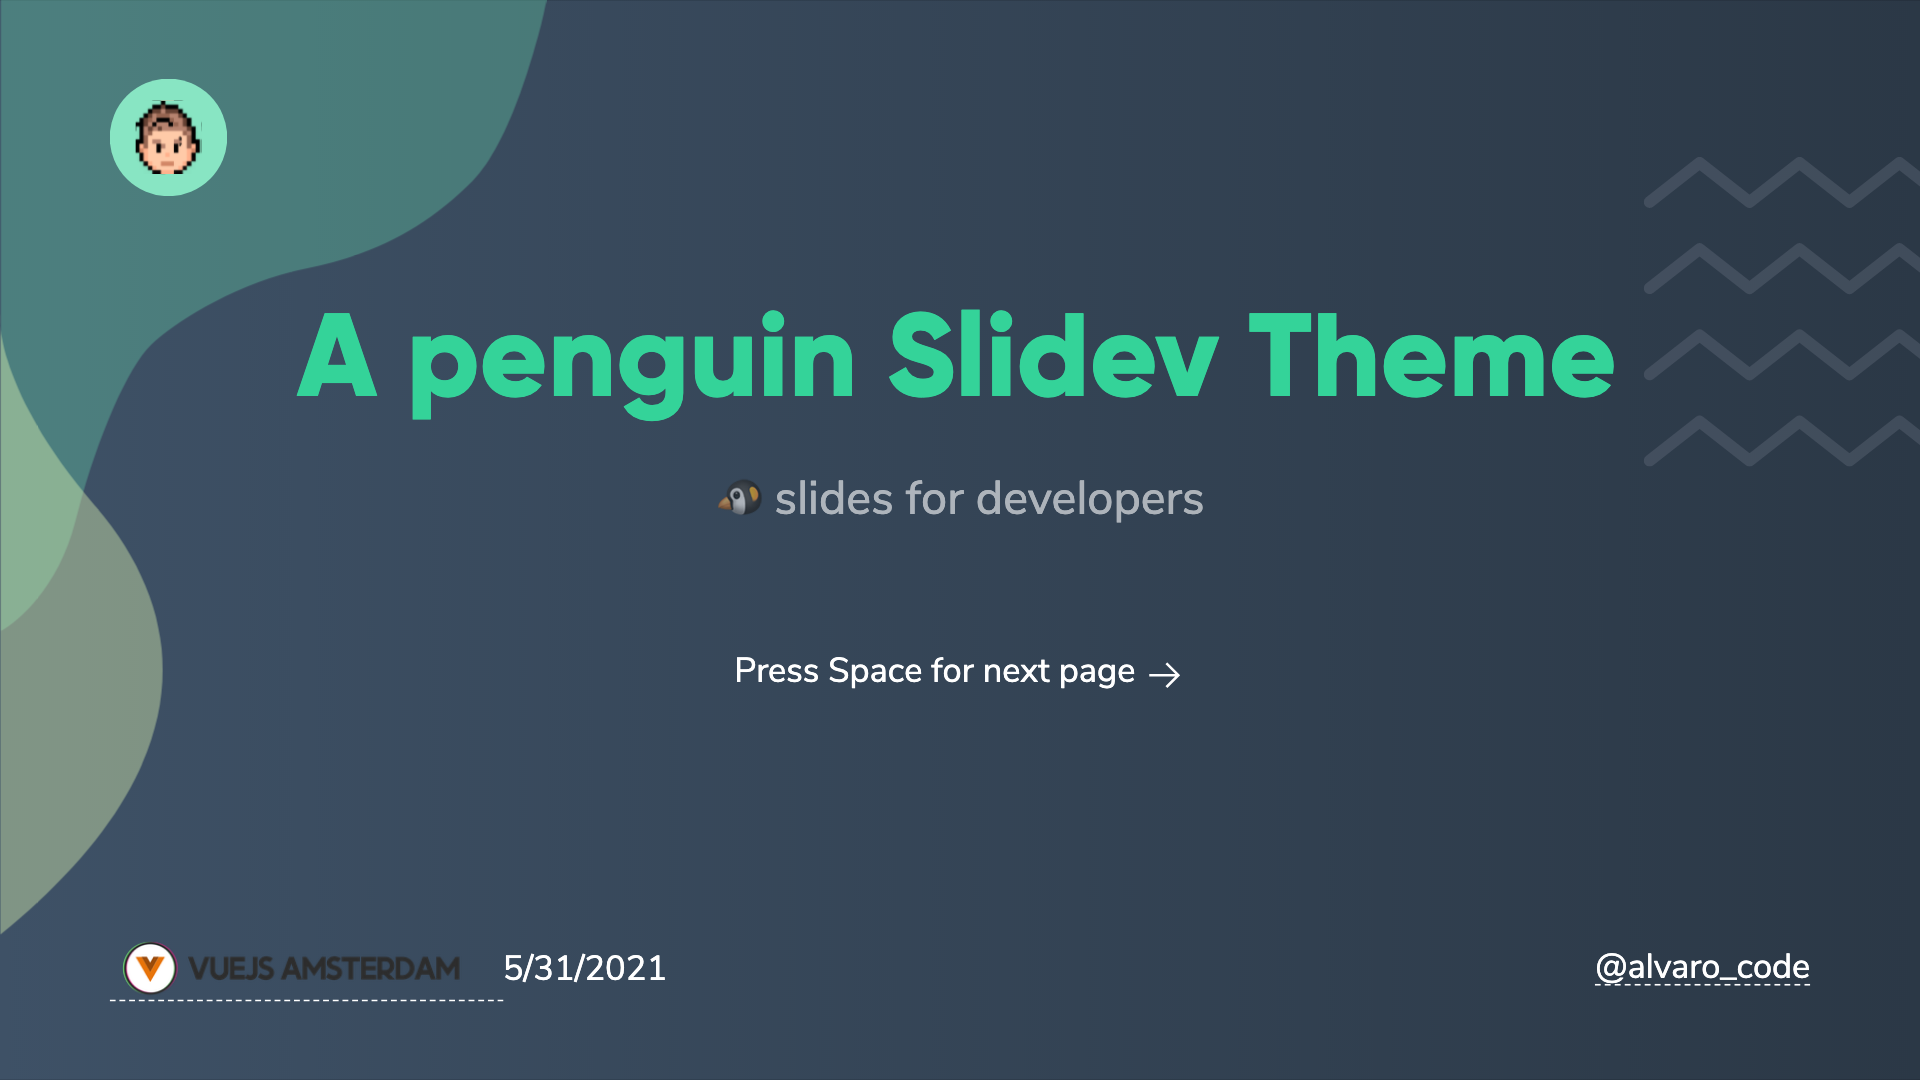 slidev-theme-penguin